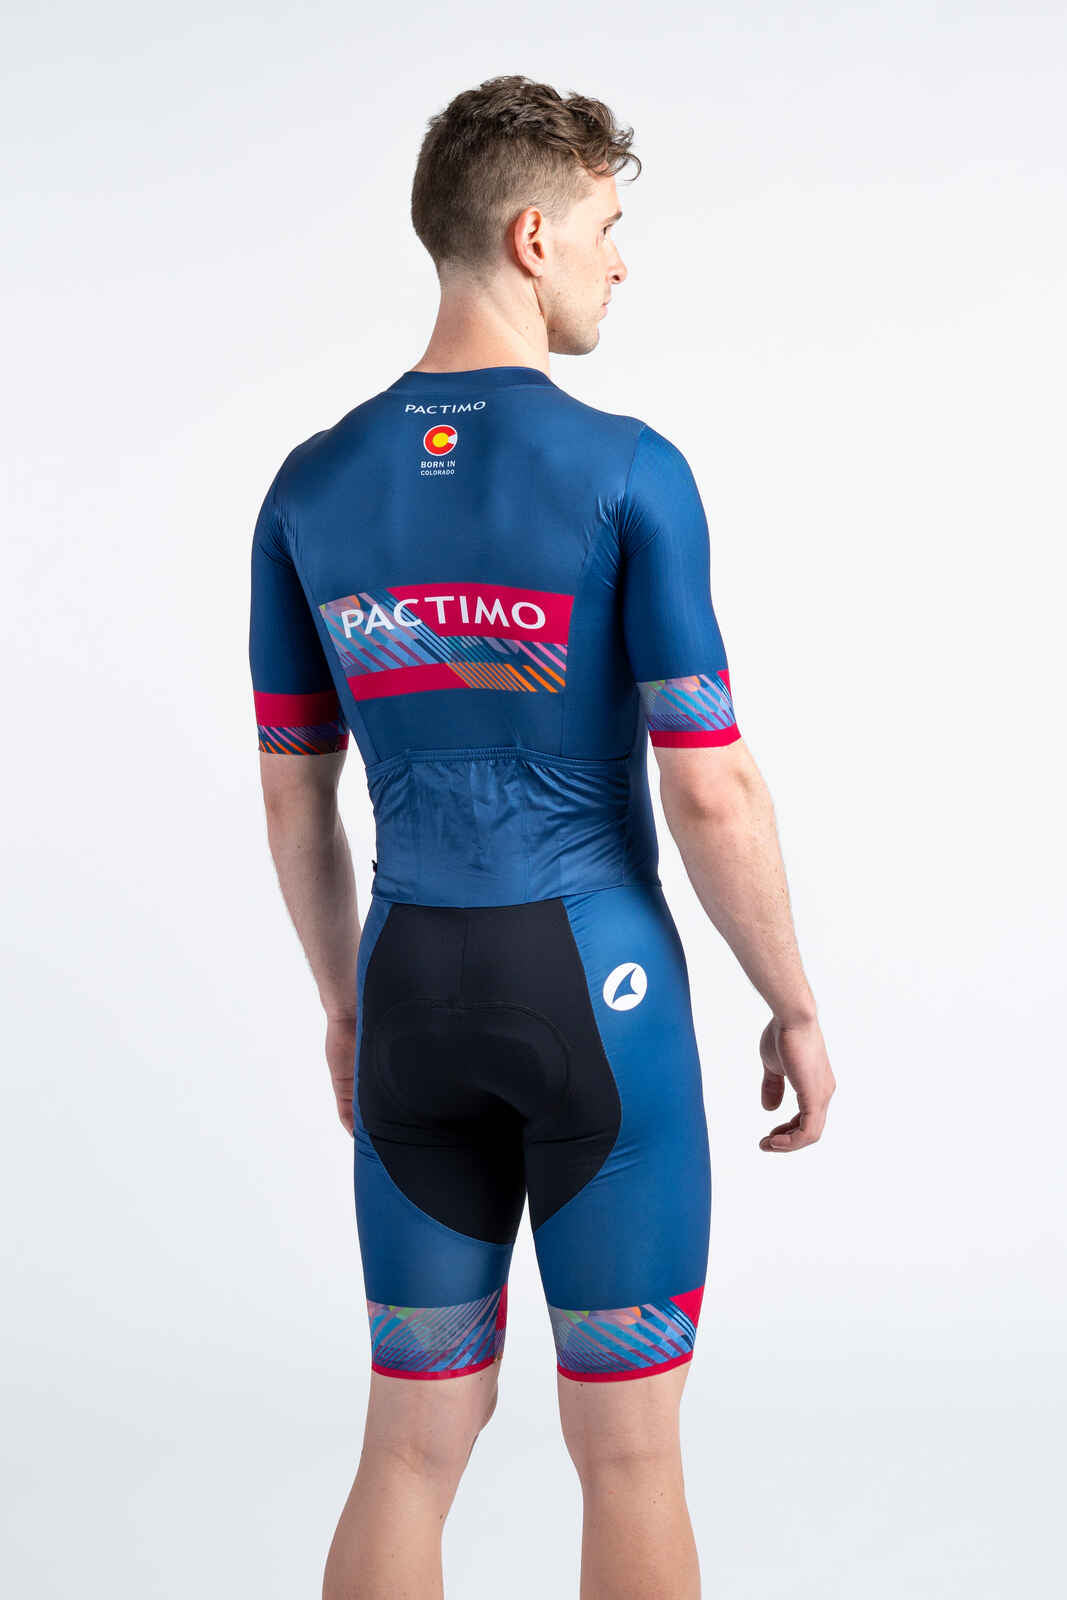 Men's Custom Cycling Skinsuit - Short Sleeve Flyte Back View